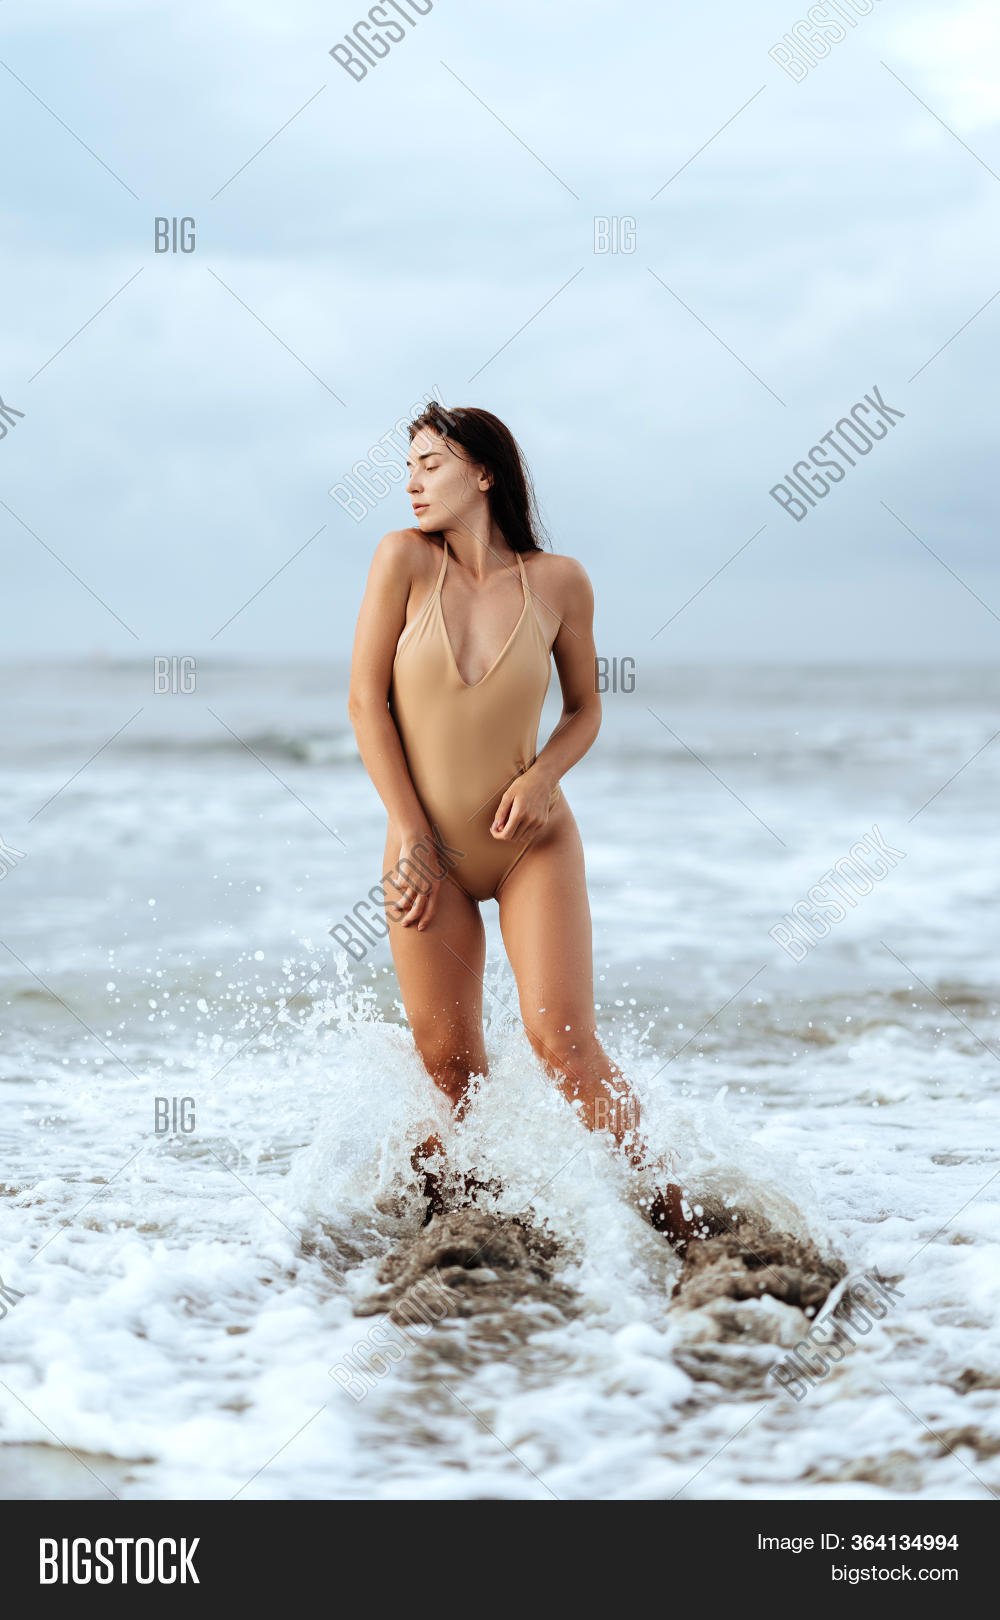 ciaran nolan add sexy nudist photos photo